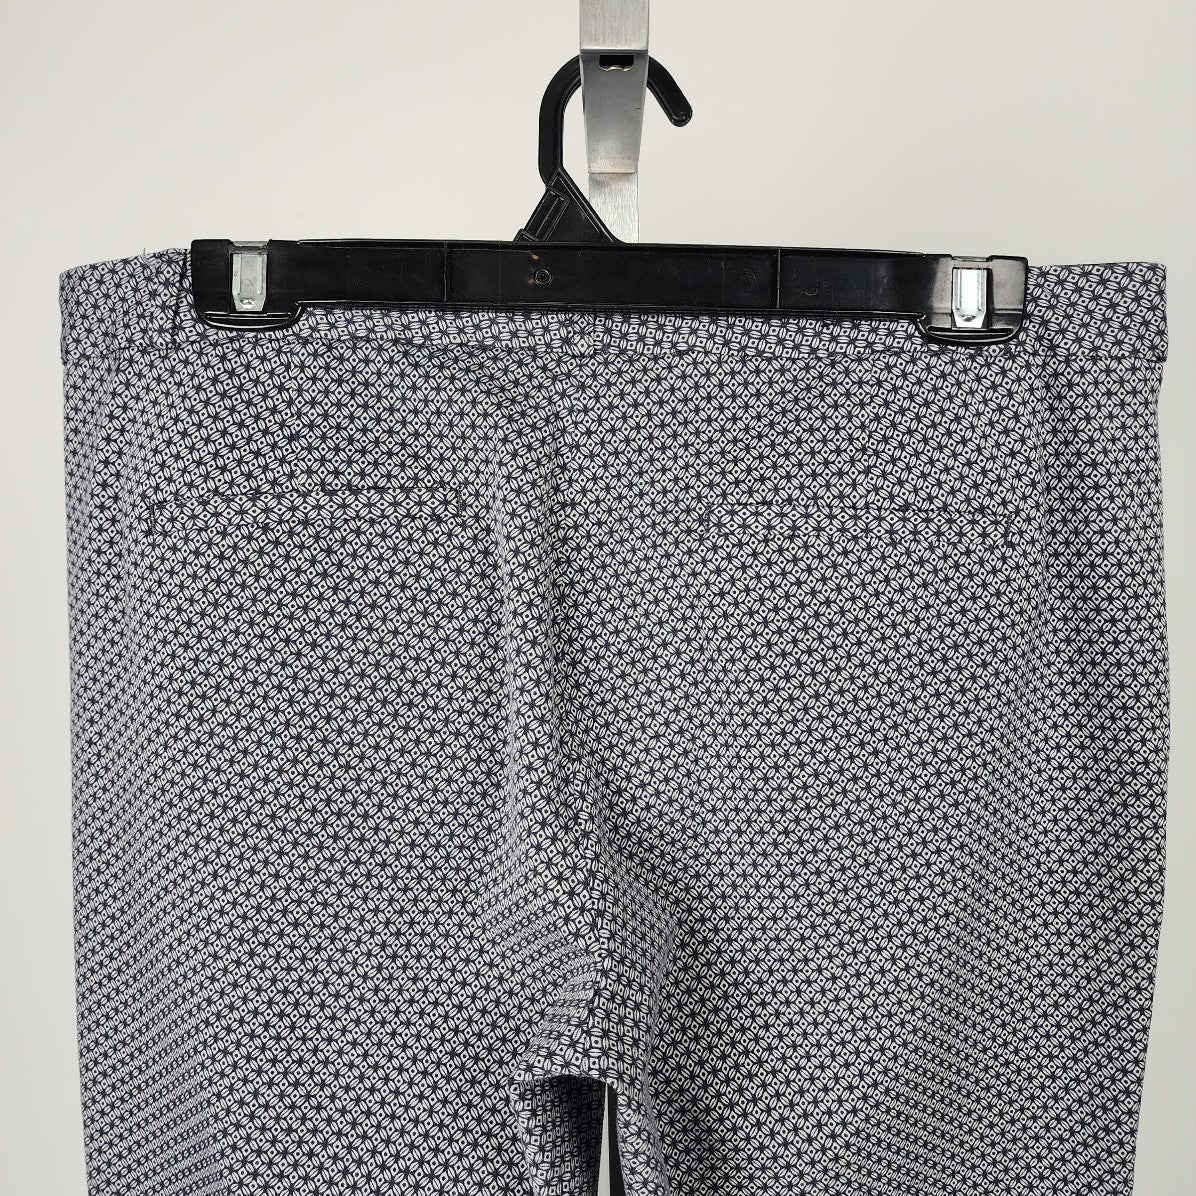 Banana Republic Blue Geometric Print Cropped Dress Pants Size 12